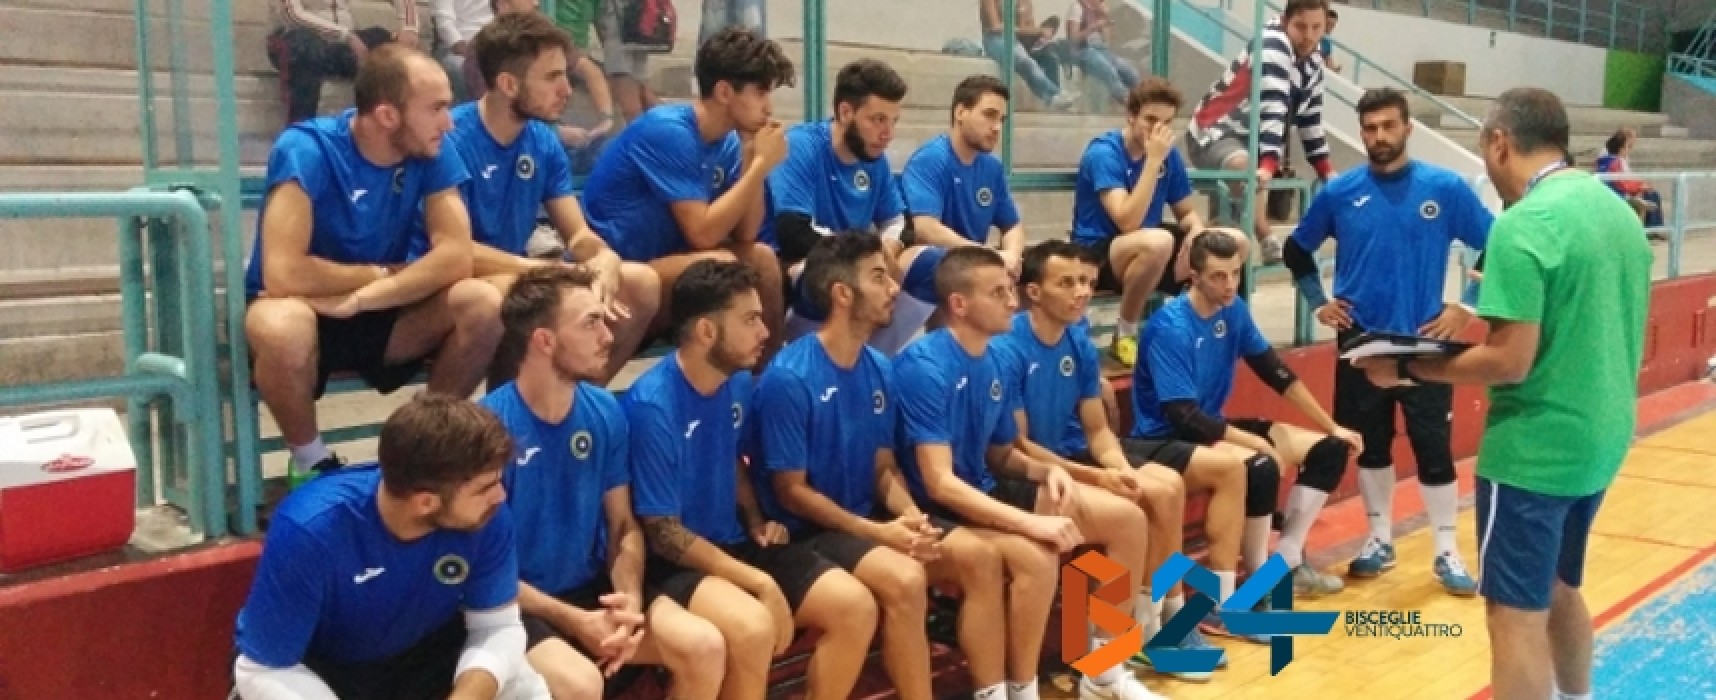 Futsal Bisceglie: seconda vittoria in amichevole, 7-4 al Futsal Capurso